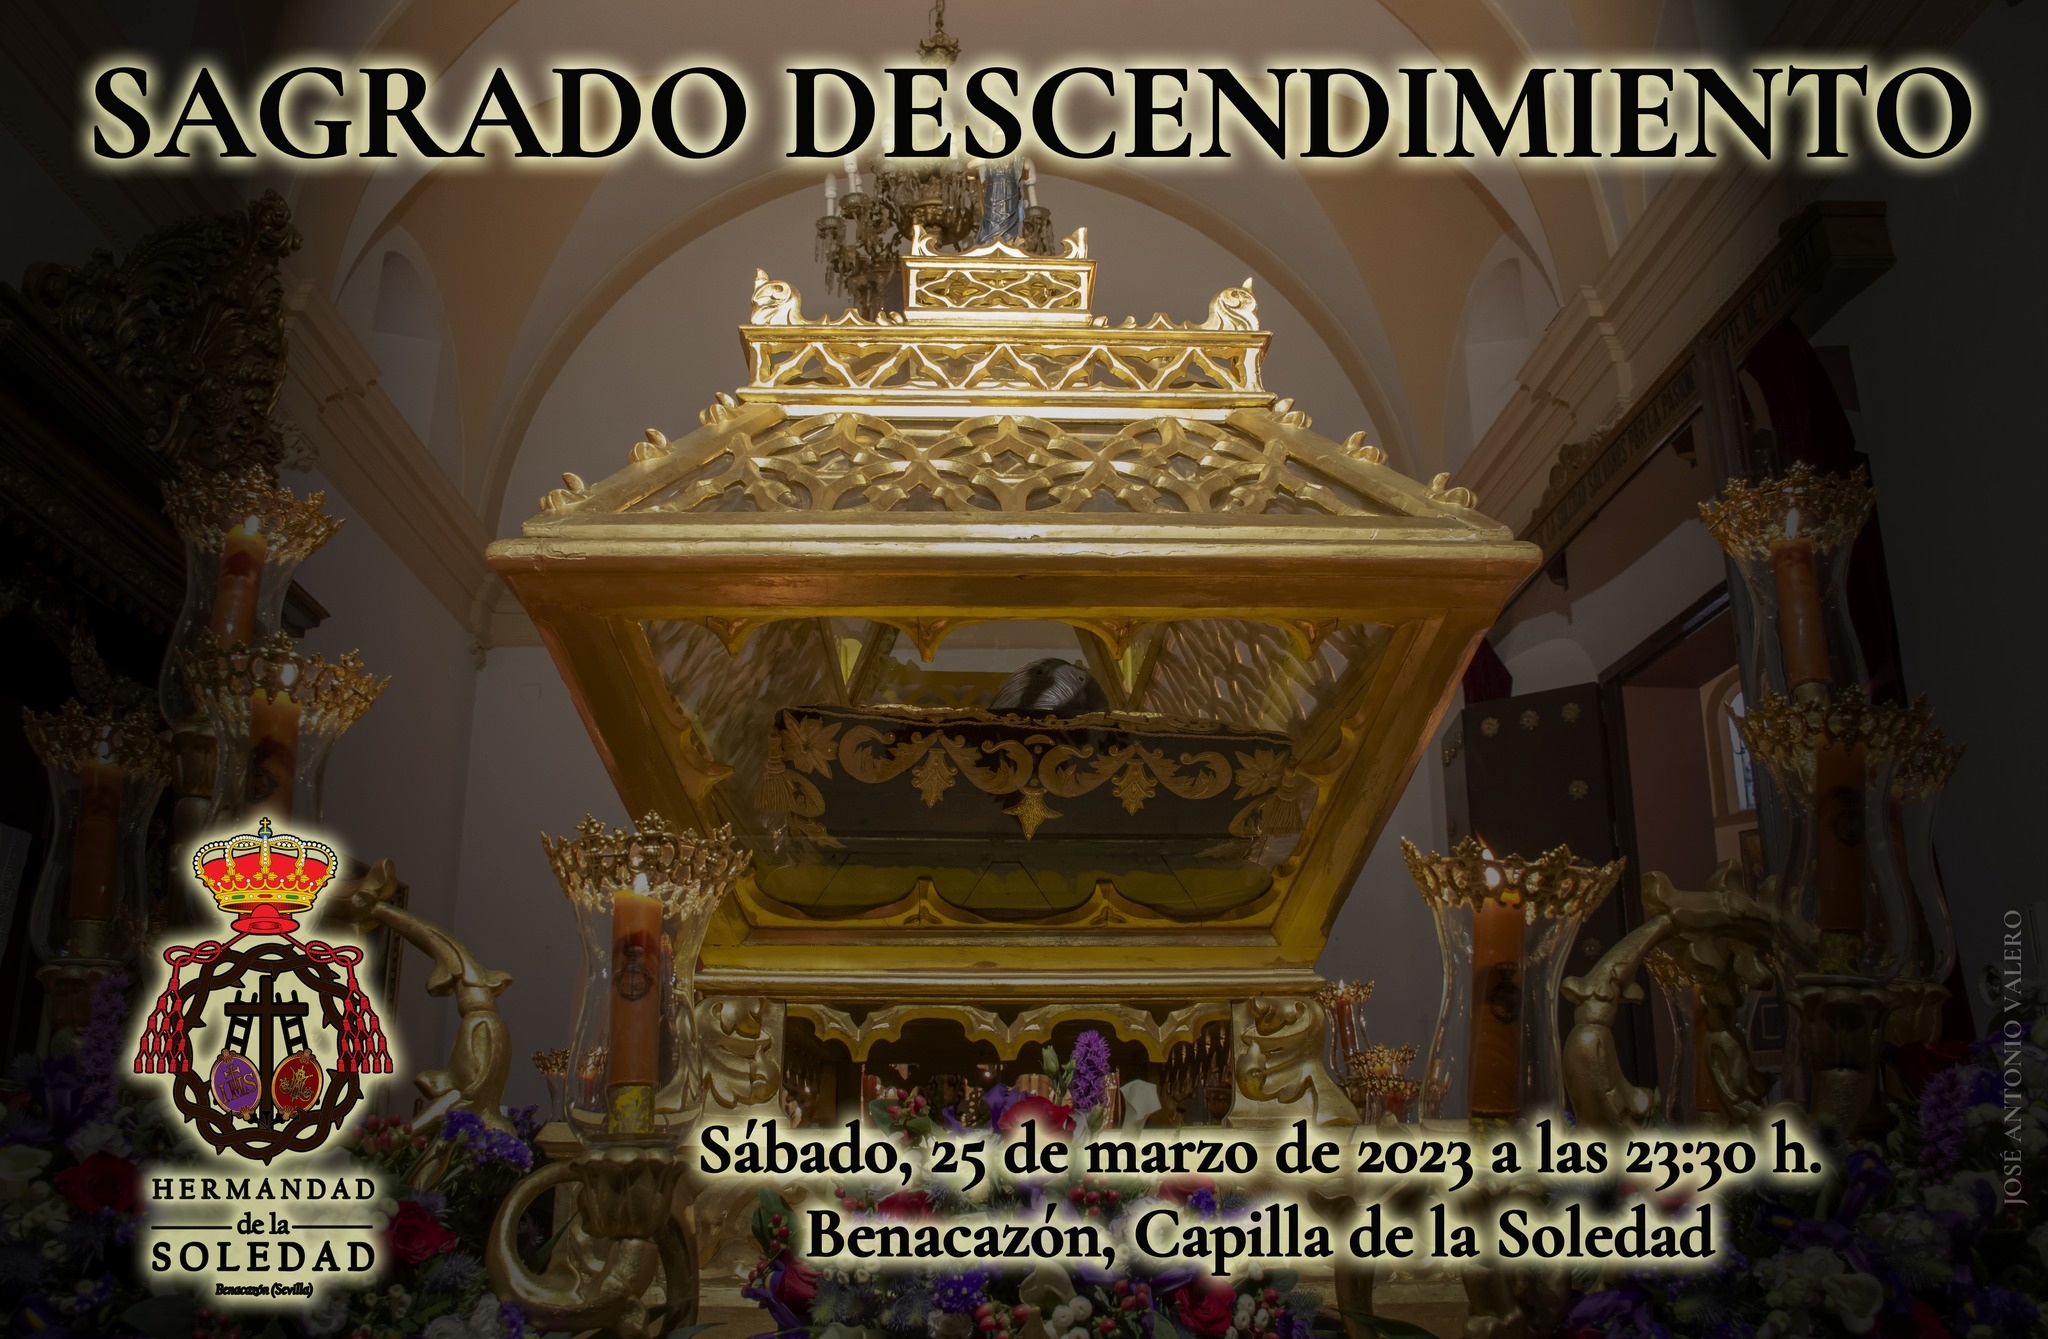 Hdad. Soledad_Descendimiento Cristo 25.03.2023